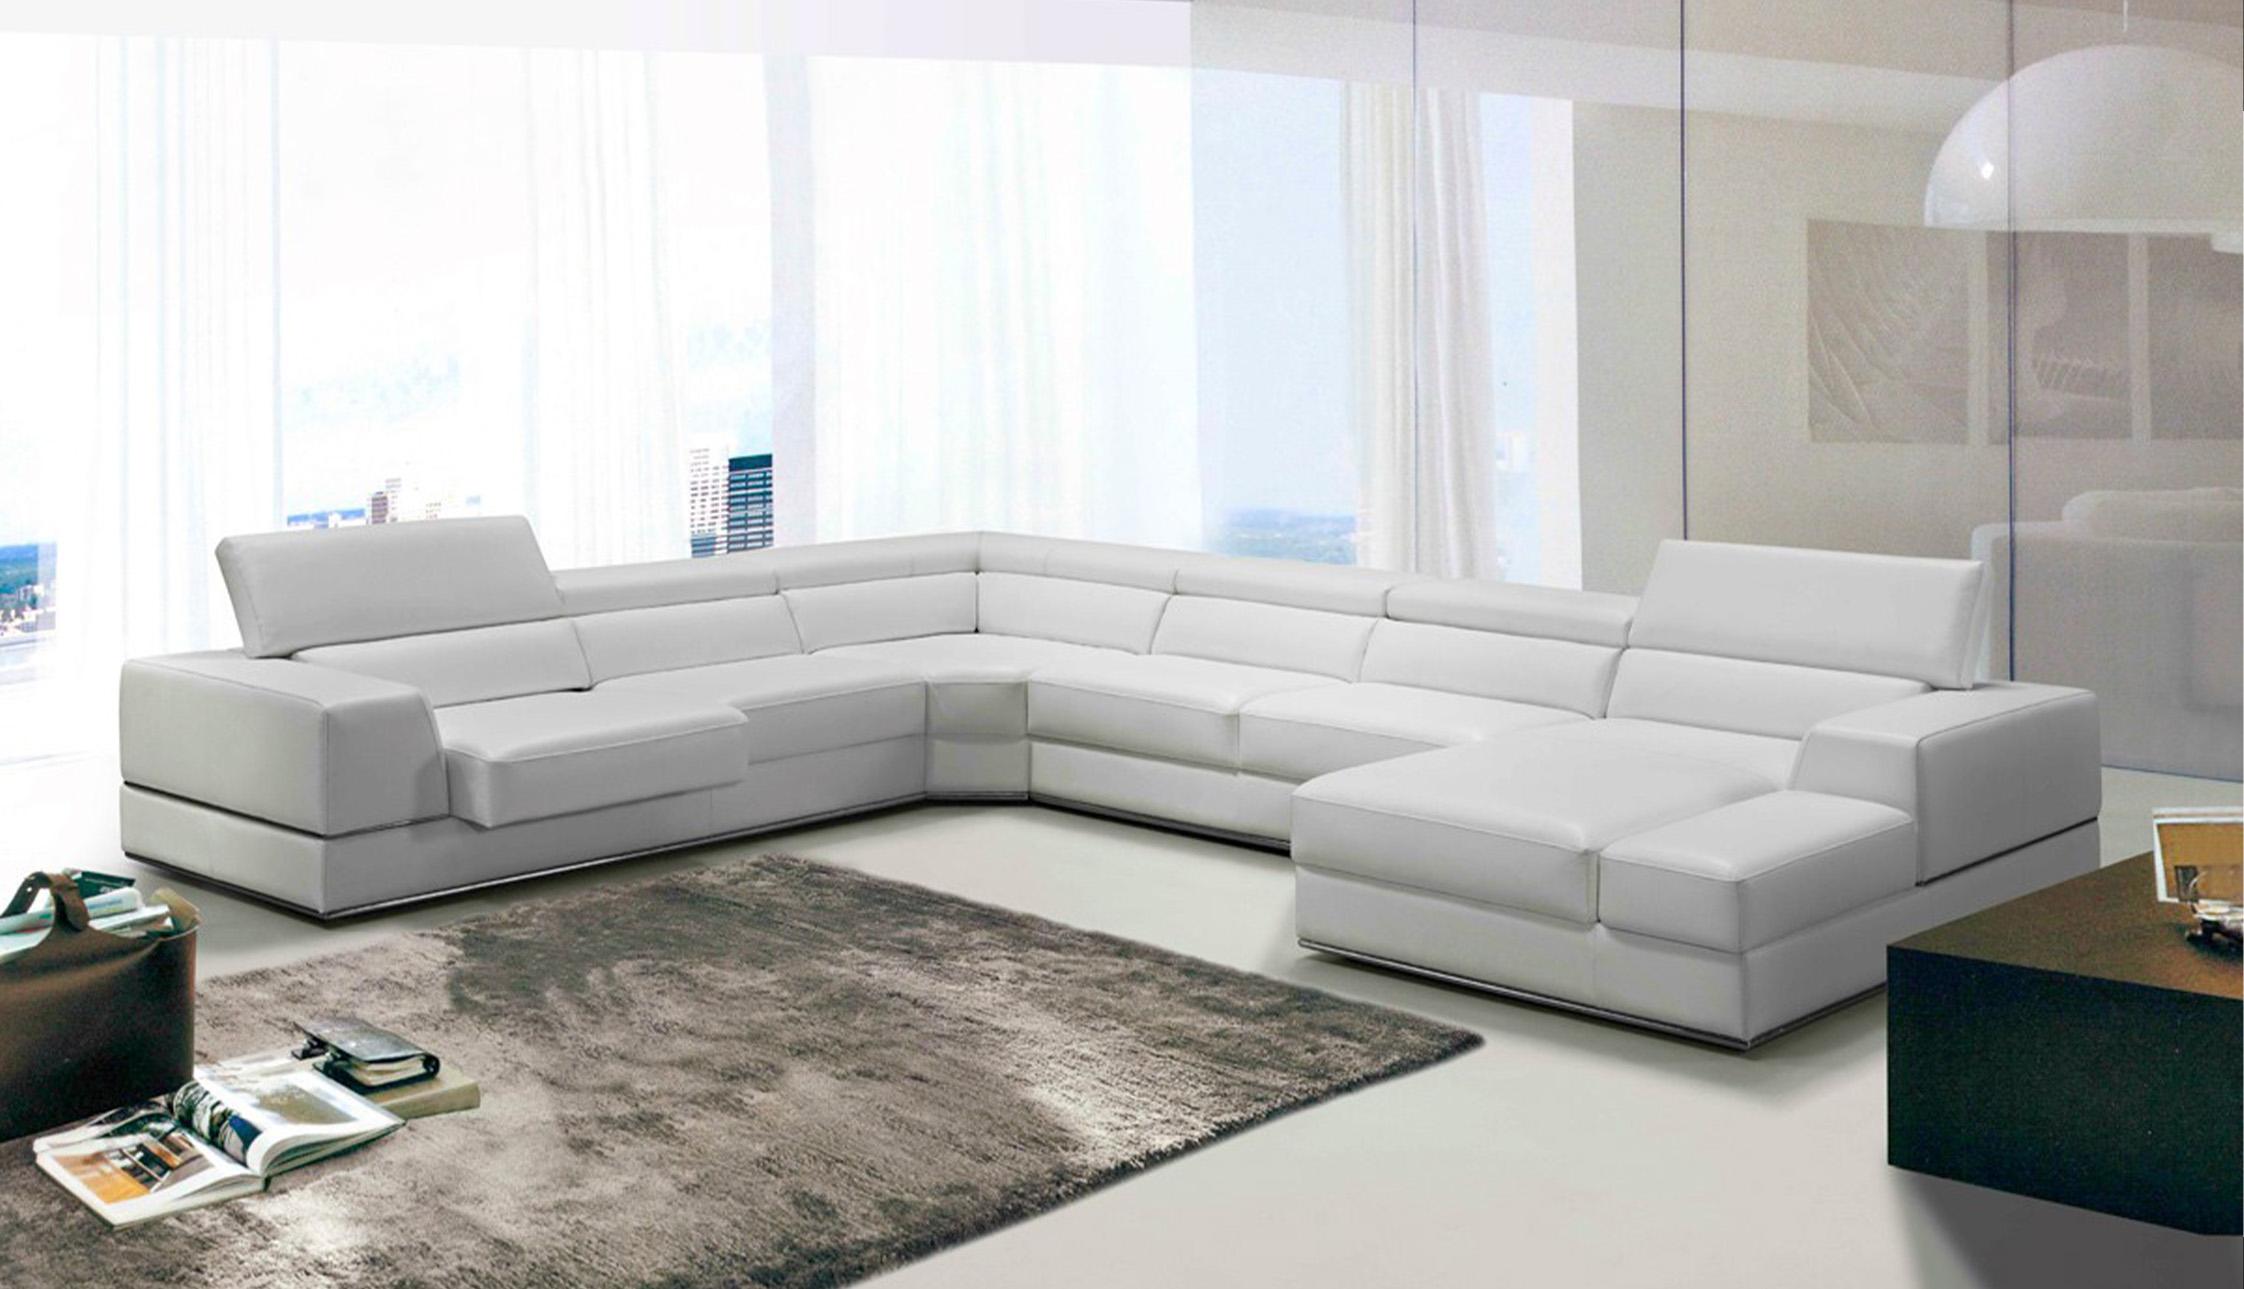 

    
VIG Furniture VGCA5106-WHT Sectional Sofa White VGCA5106-WHT
